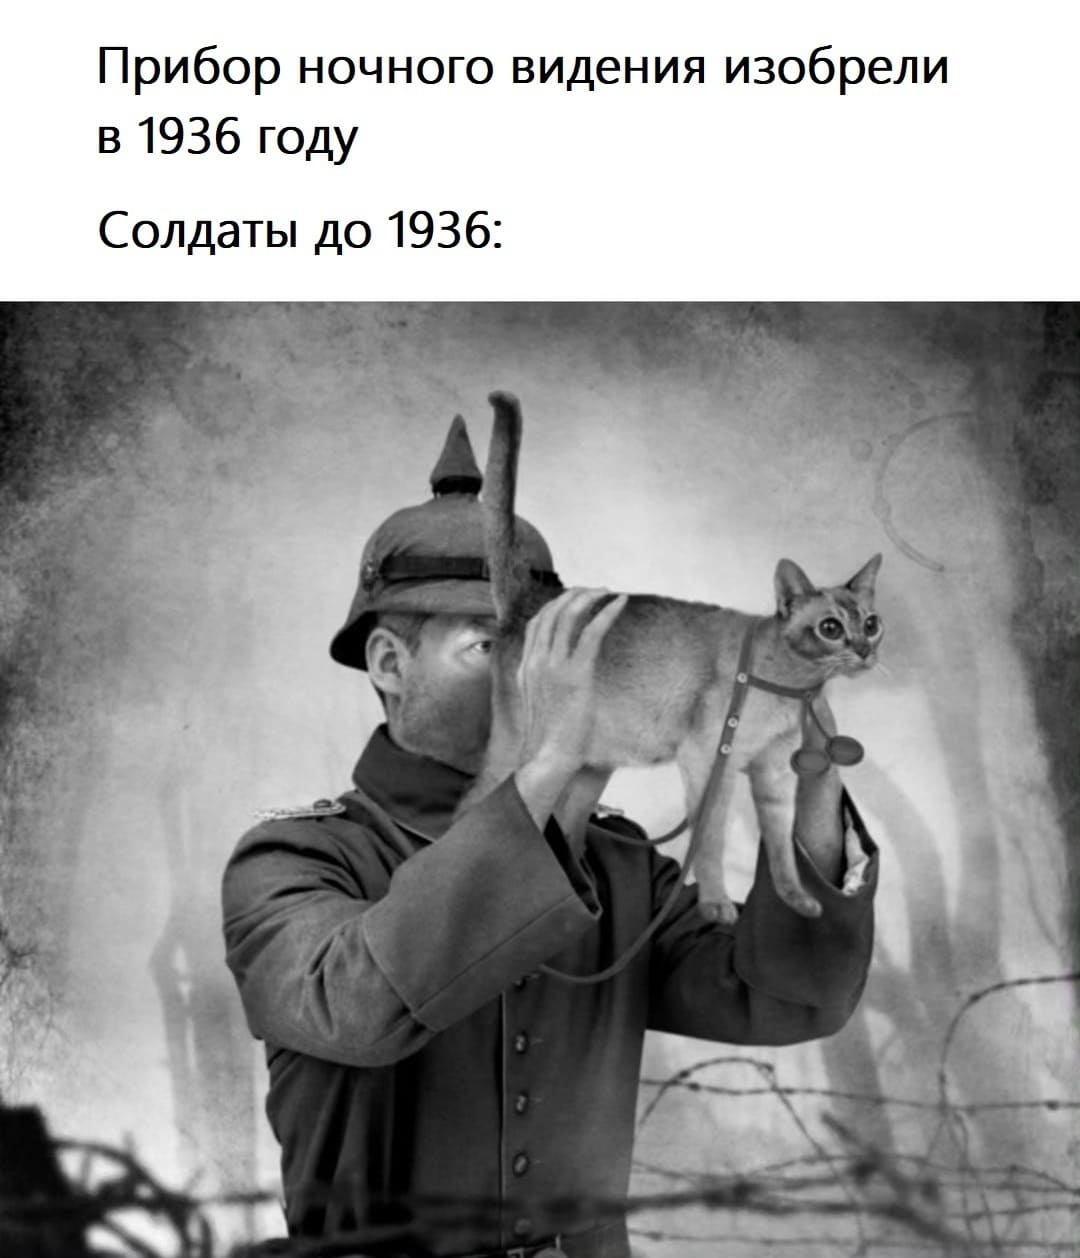 Прибор ночного видения изобрели в 1936 году.
Солдаты до 1936: *солдат смотрит котом как биноклем*